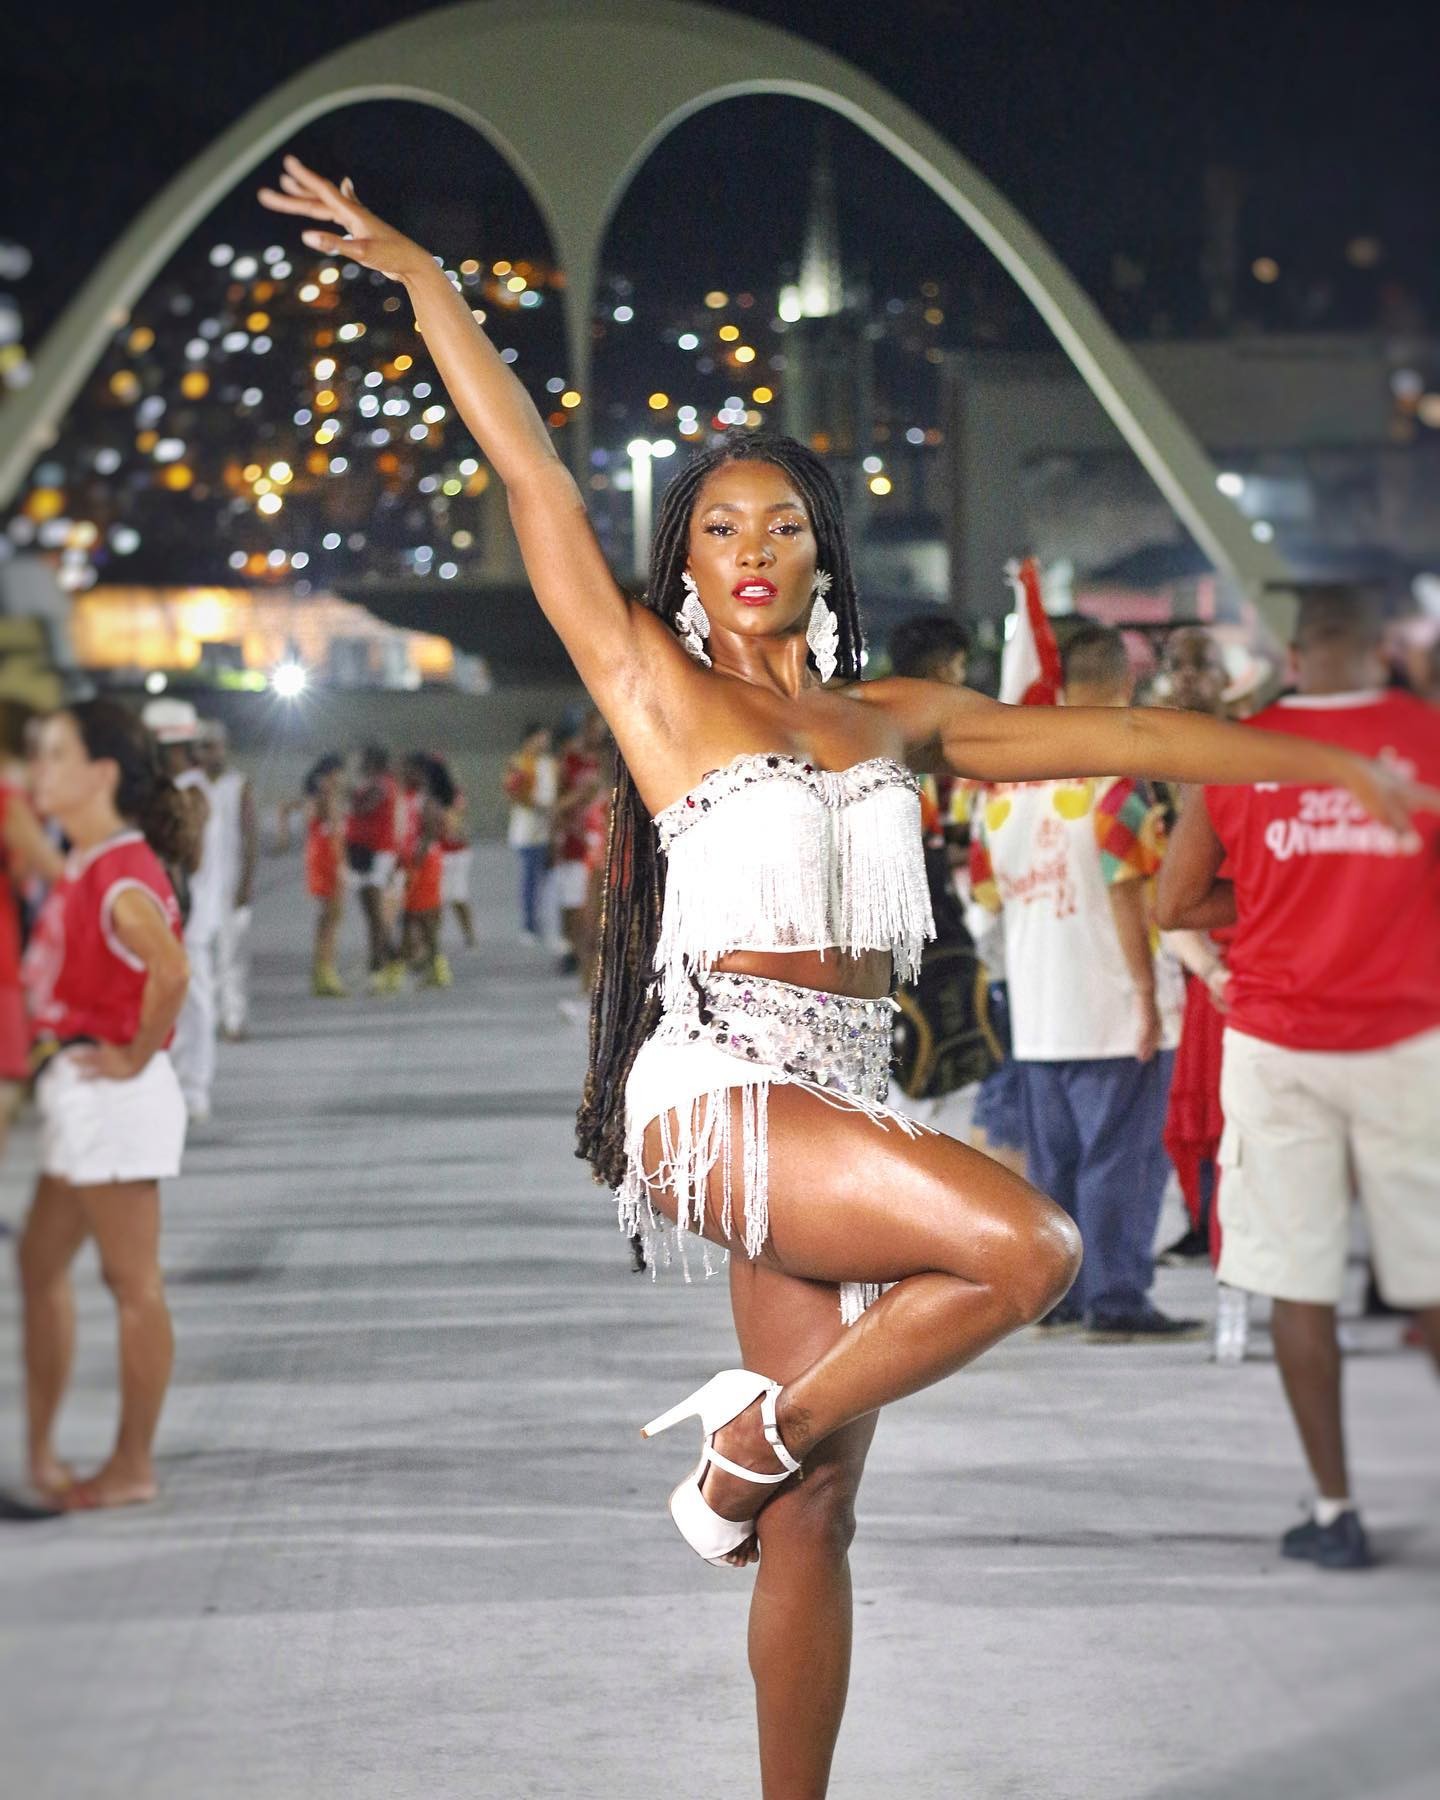 Erika Januza posa na Sapucaí em ensaio de escolha de samba: 'De volta' (Foto: Reprodução / Instagram)